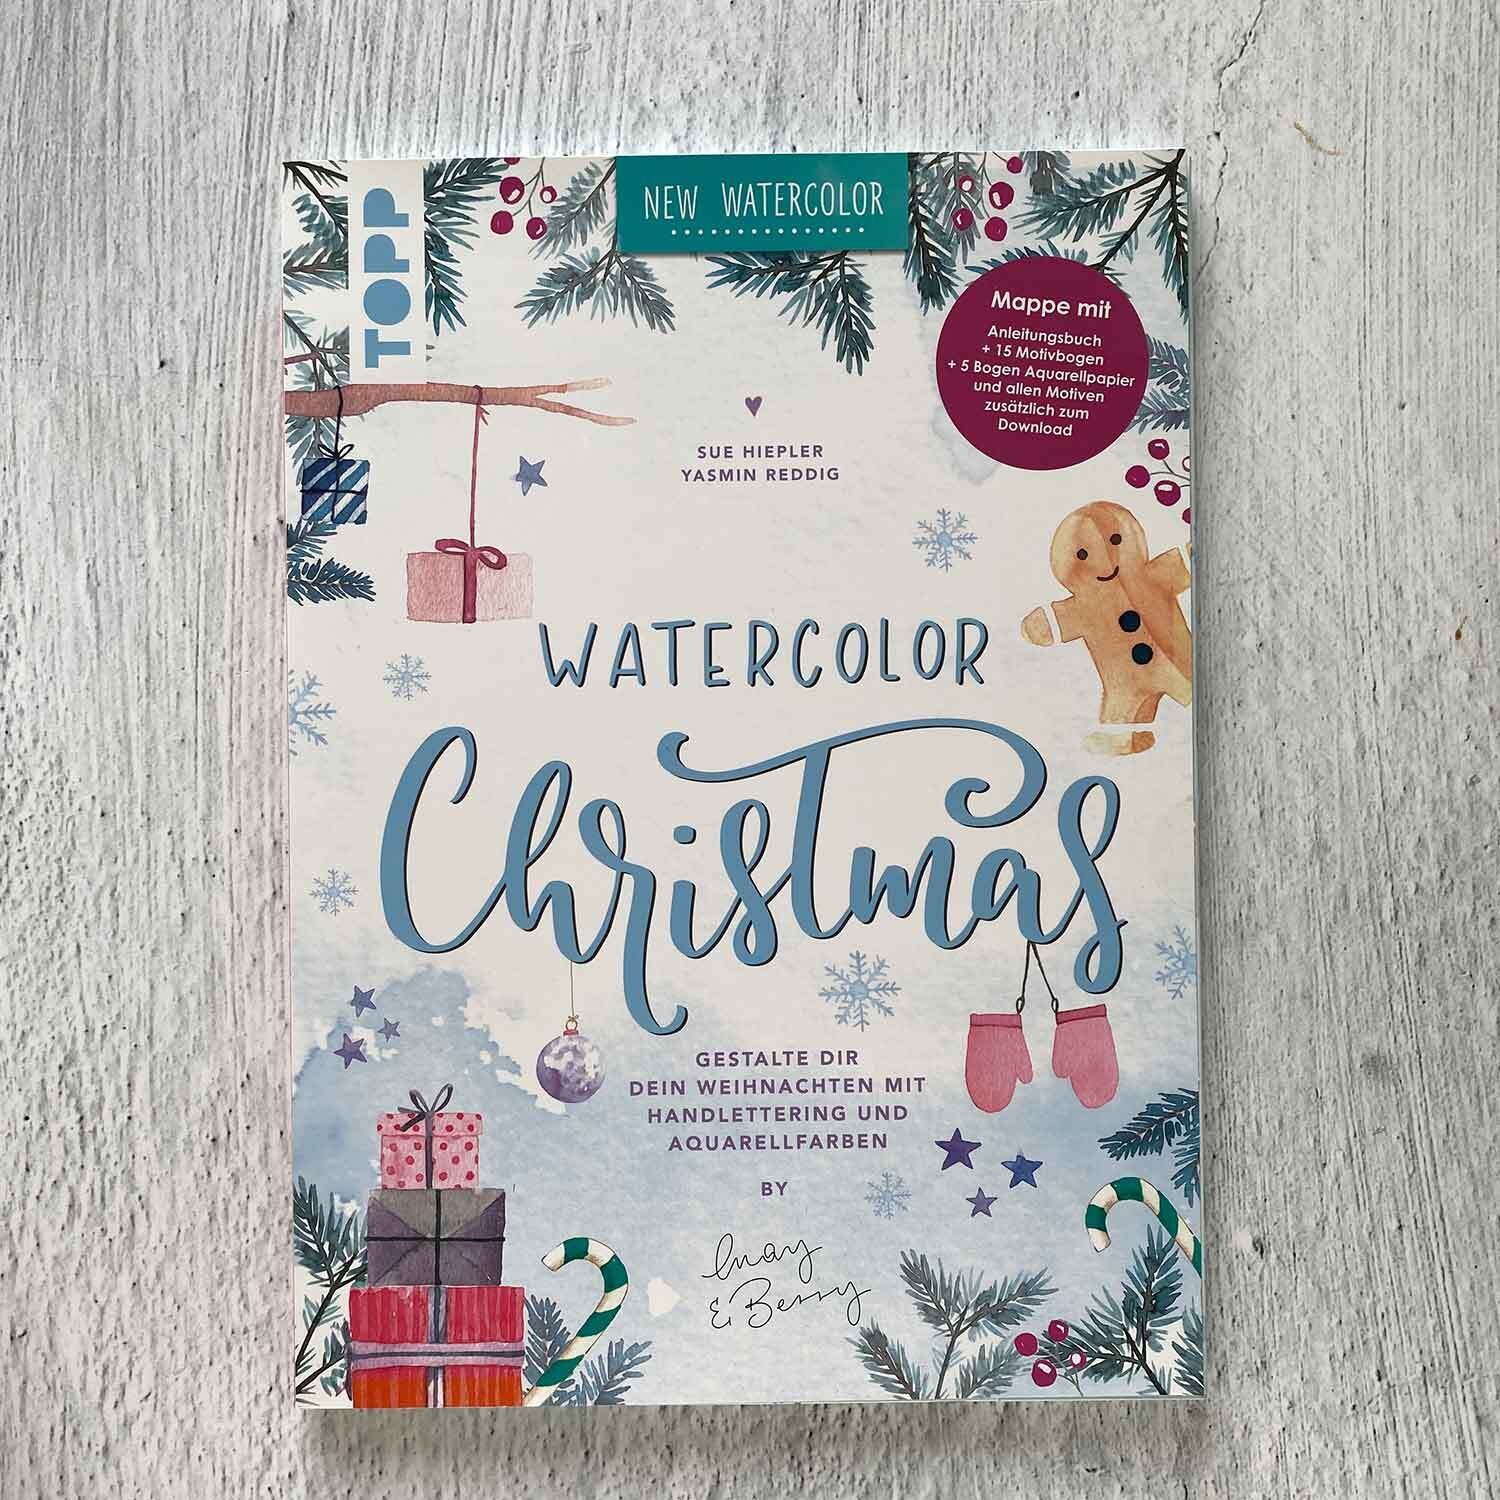 Watercolor Christmas – Gestalte dir dein Weihnachten mit Handlettering und Aquarellfarben (Mappe mit Anleitungsbuch + Motivbogen + Aquarellpapier)